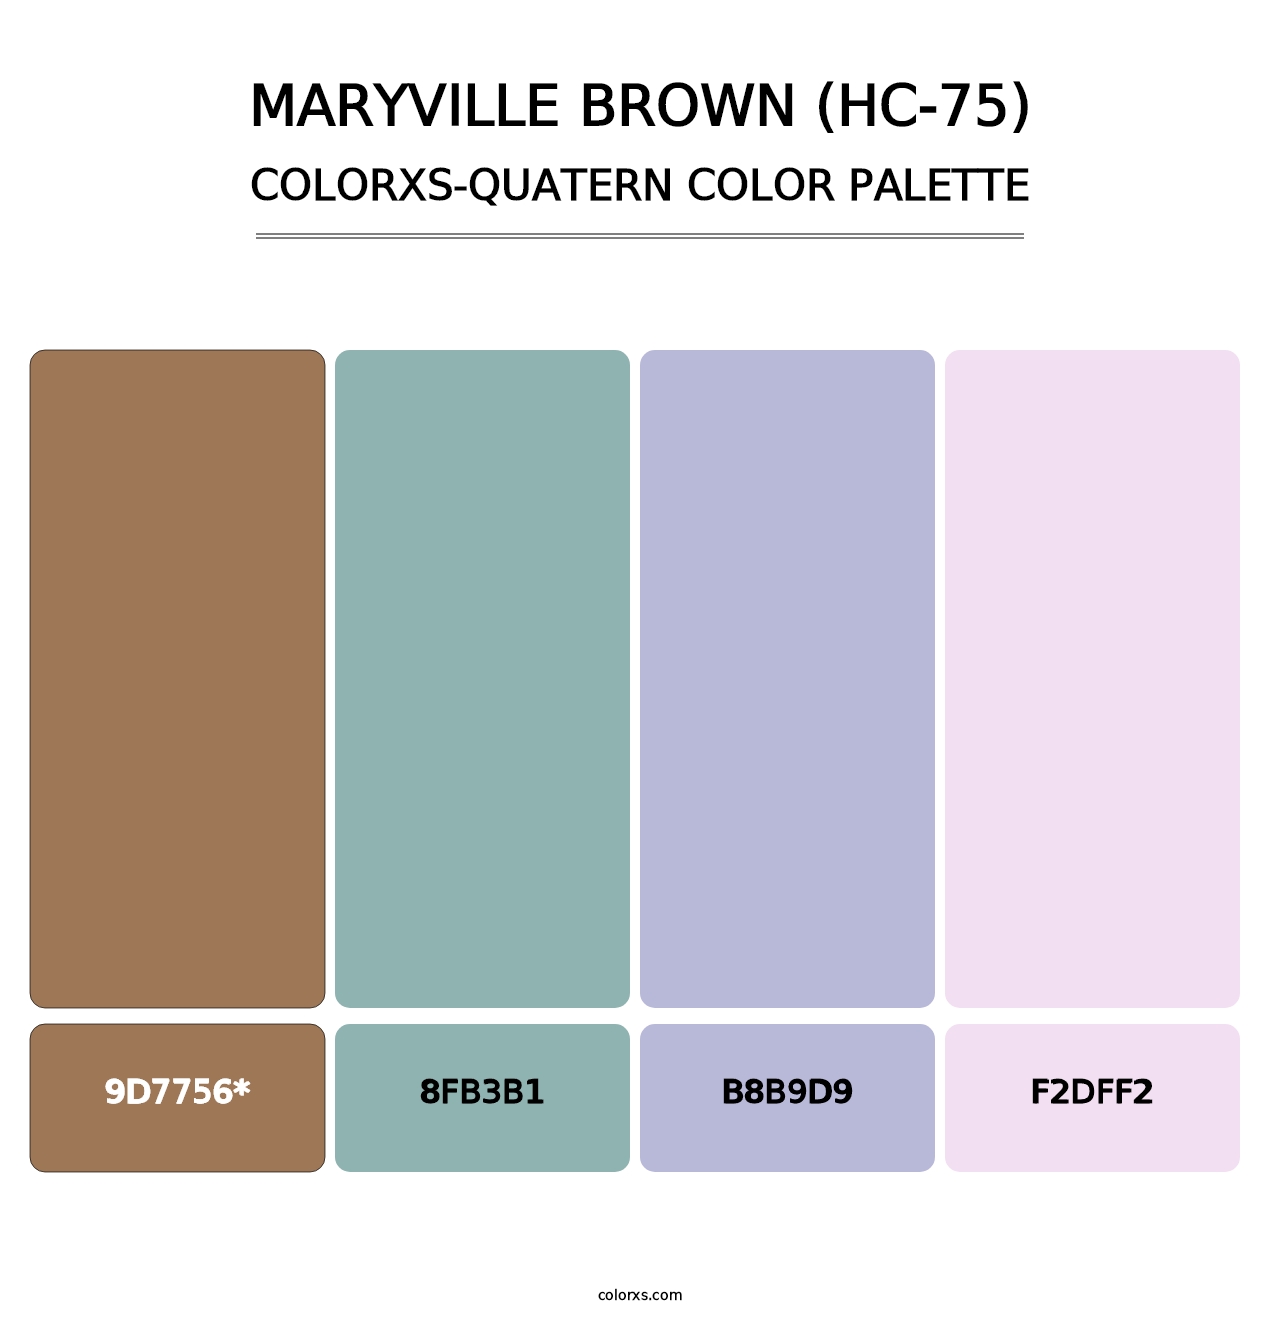 Maryville Brown (HC-75) - Colorxs Quad Palette